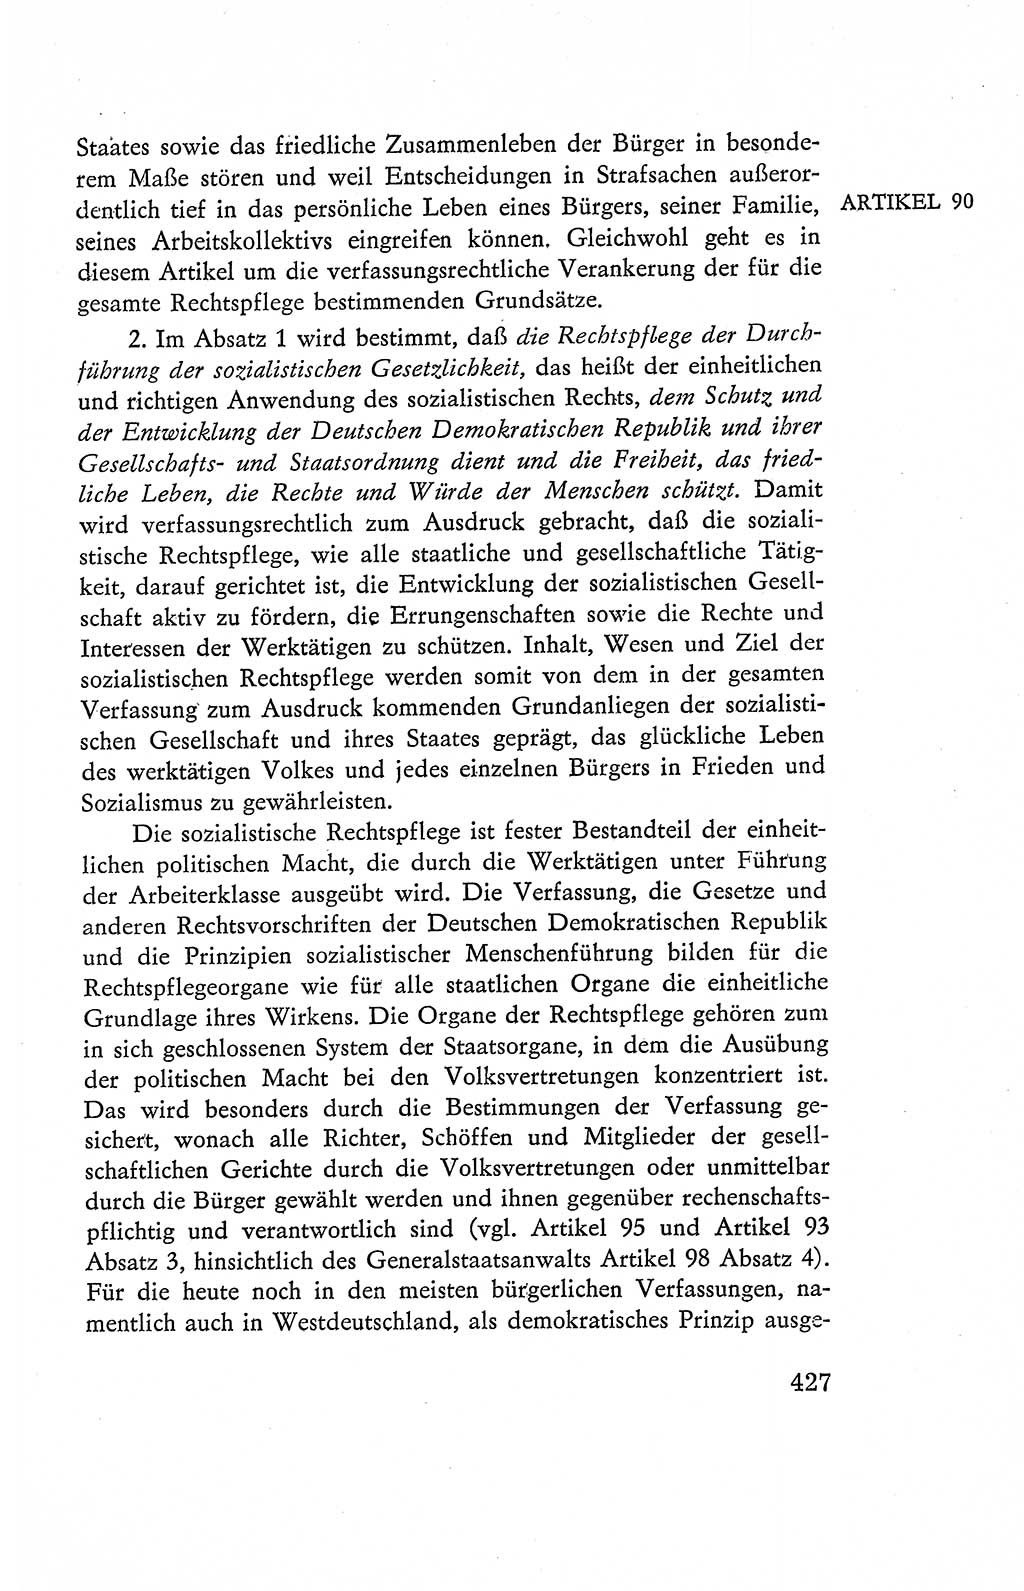 Verfassung der Deutschen Demokratischen Republik (DDR), Dokumente, Kommentar 1969, Band 2, Seite 427 (Verf. DDR Dok. Komm. 1969, Bd. 2, S. 427)